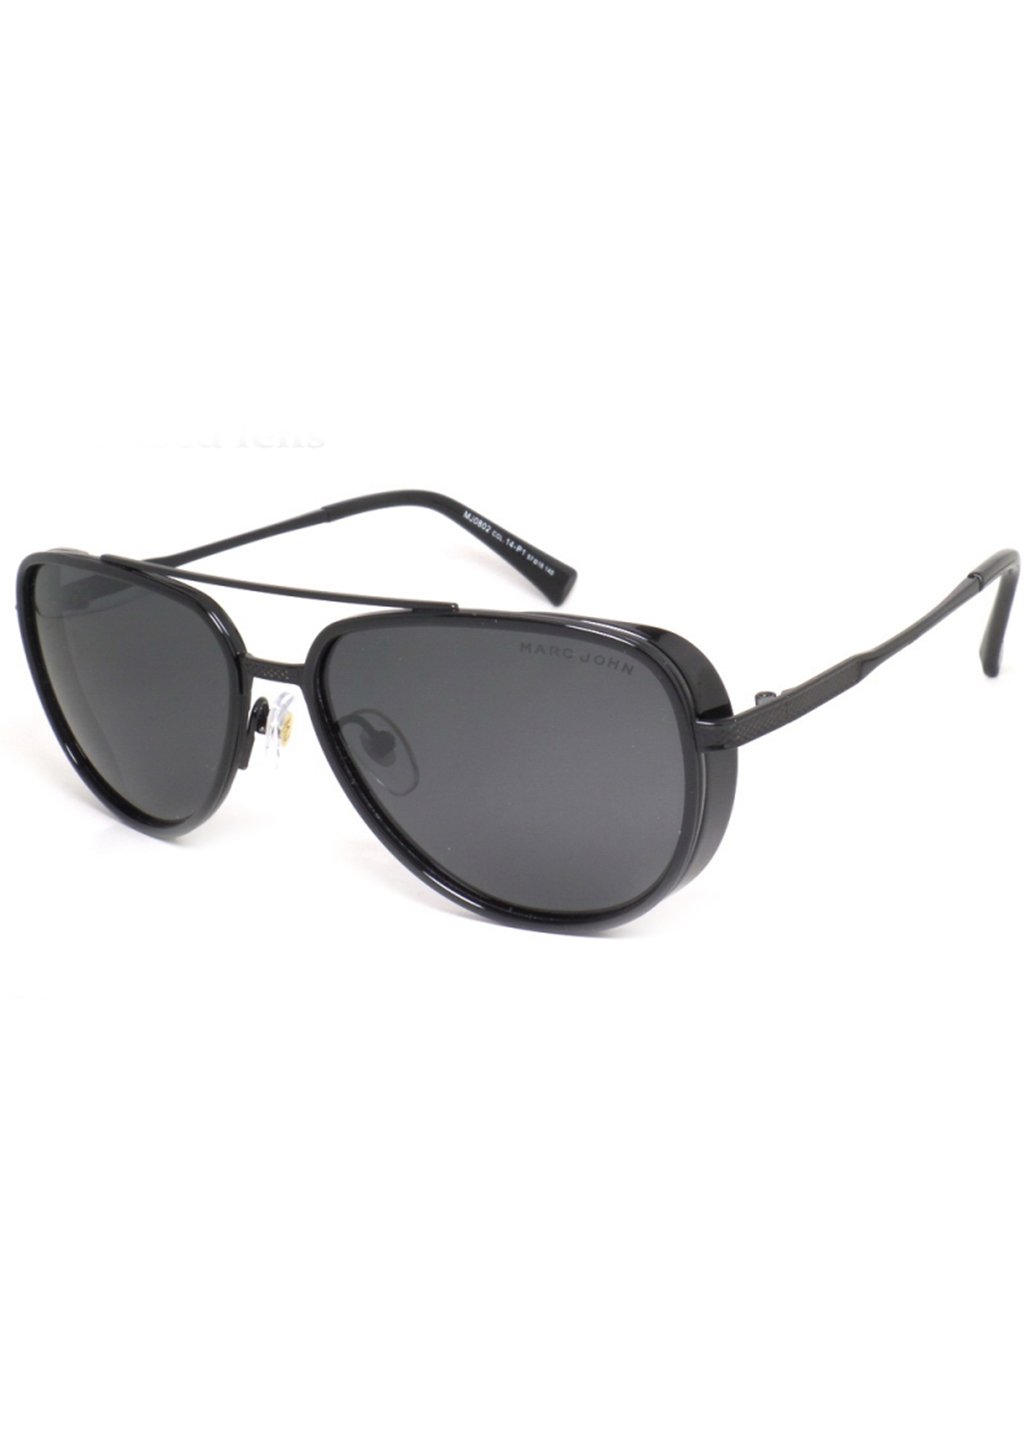 Купить Мужские солнцезащитные очки Marc John с поляризацией MJ0802 190005 - Черный в интернет-магазине